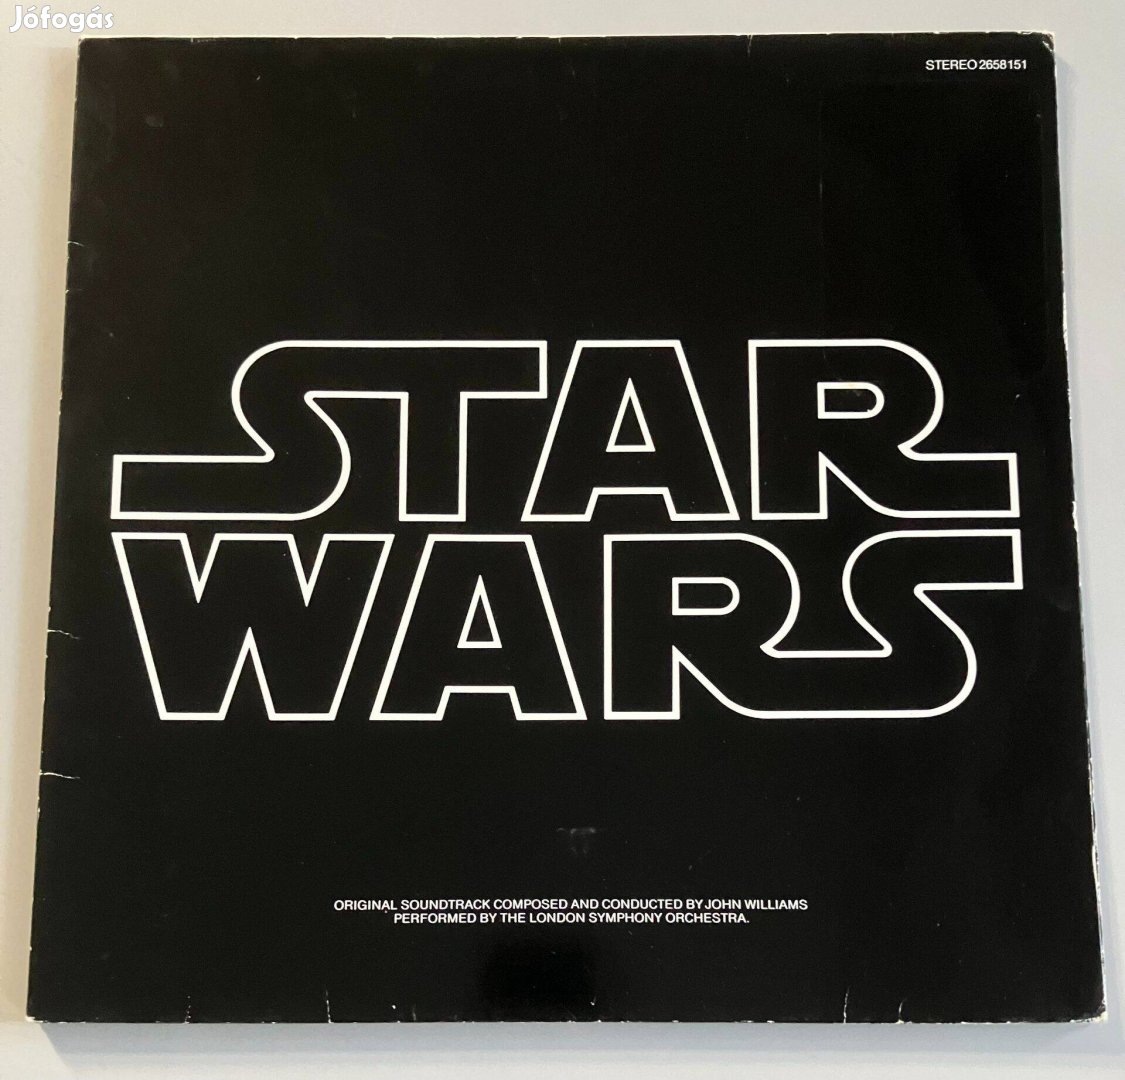 Star Wars (eredeti flmzene, német kiadás)